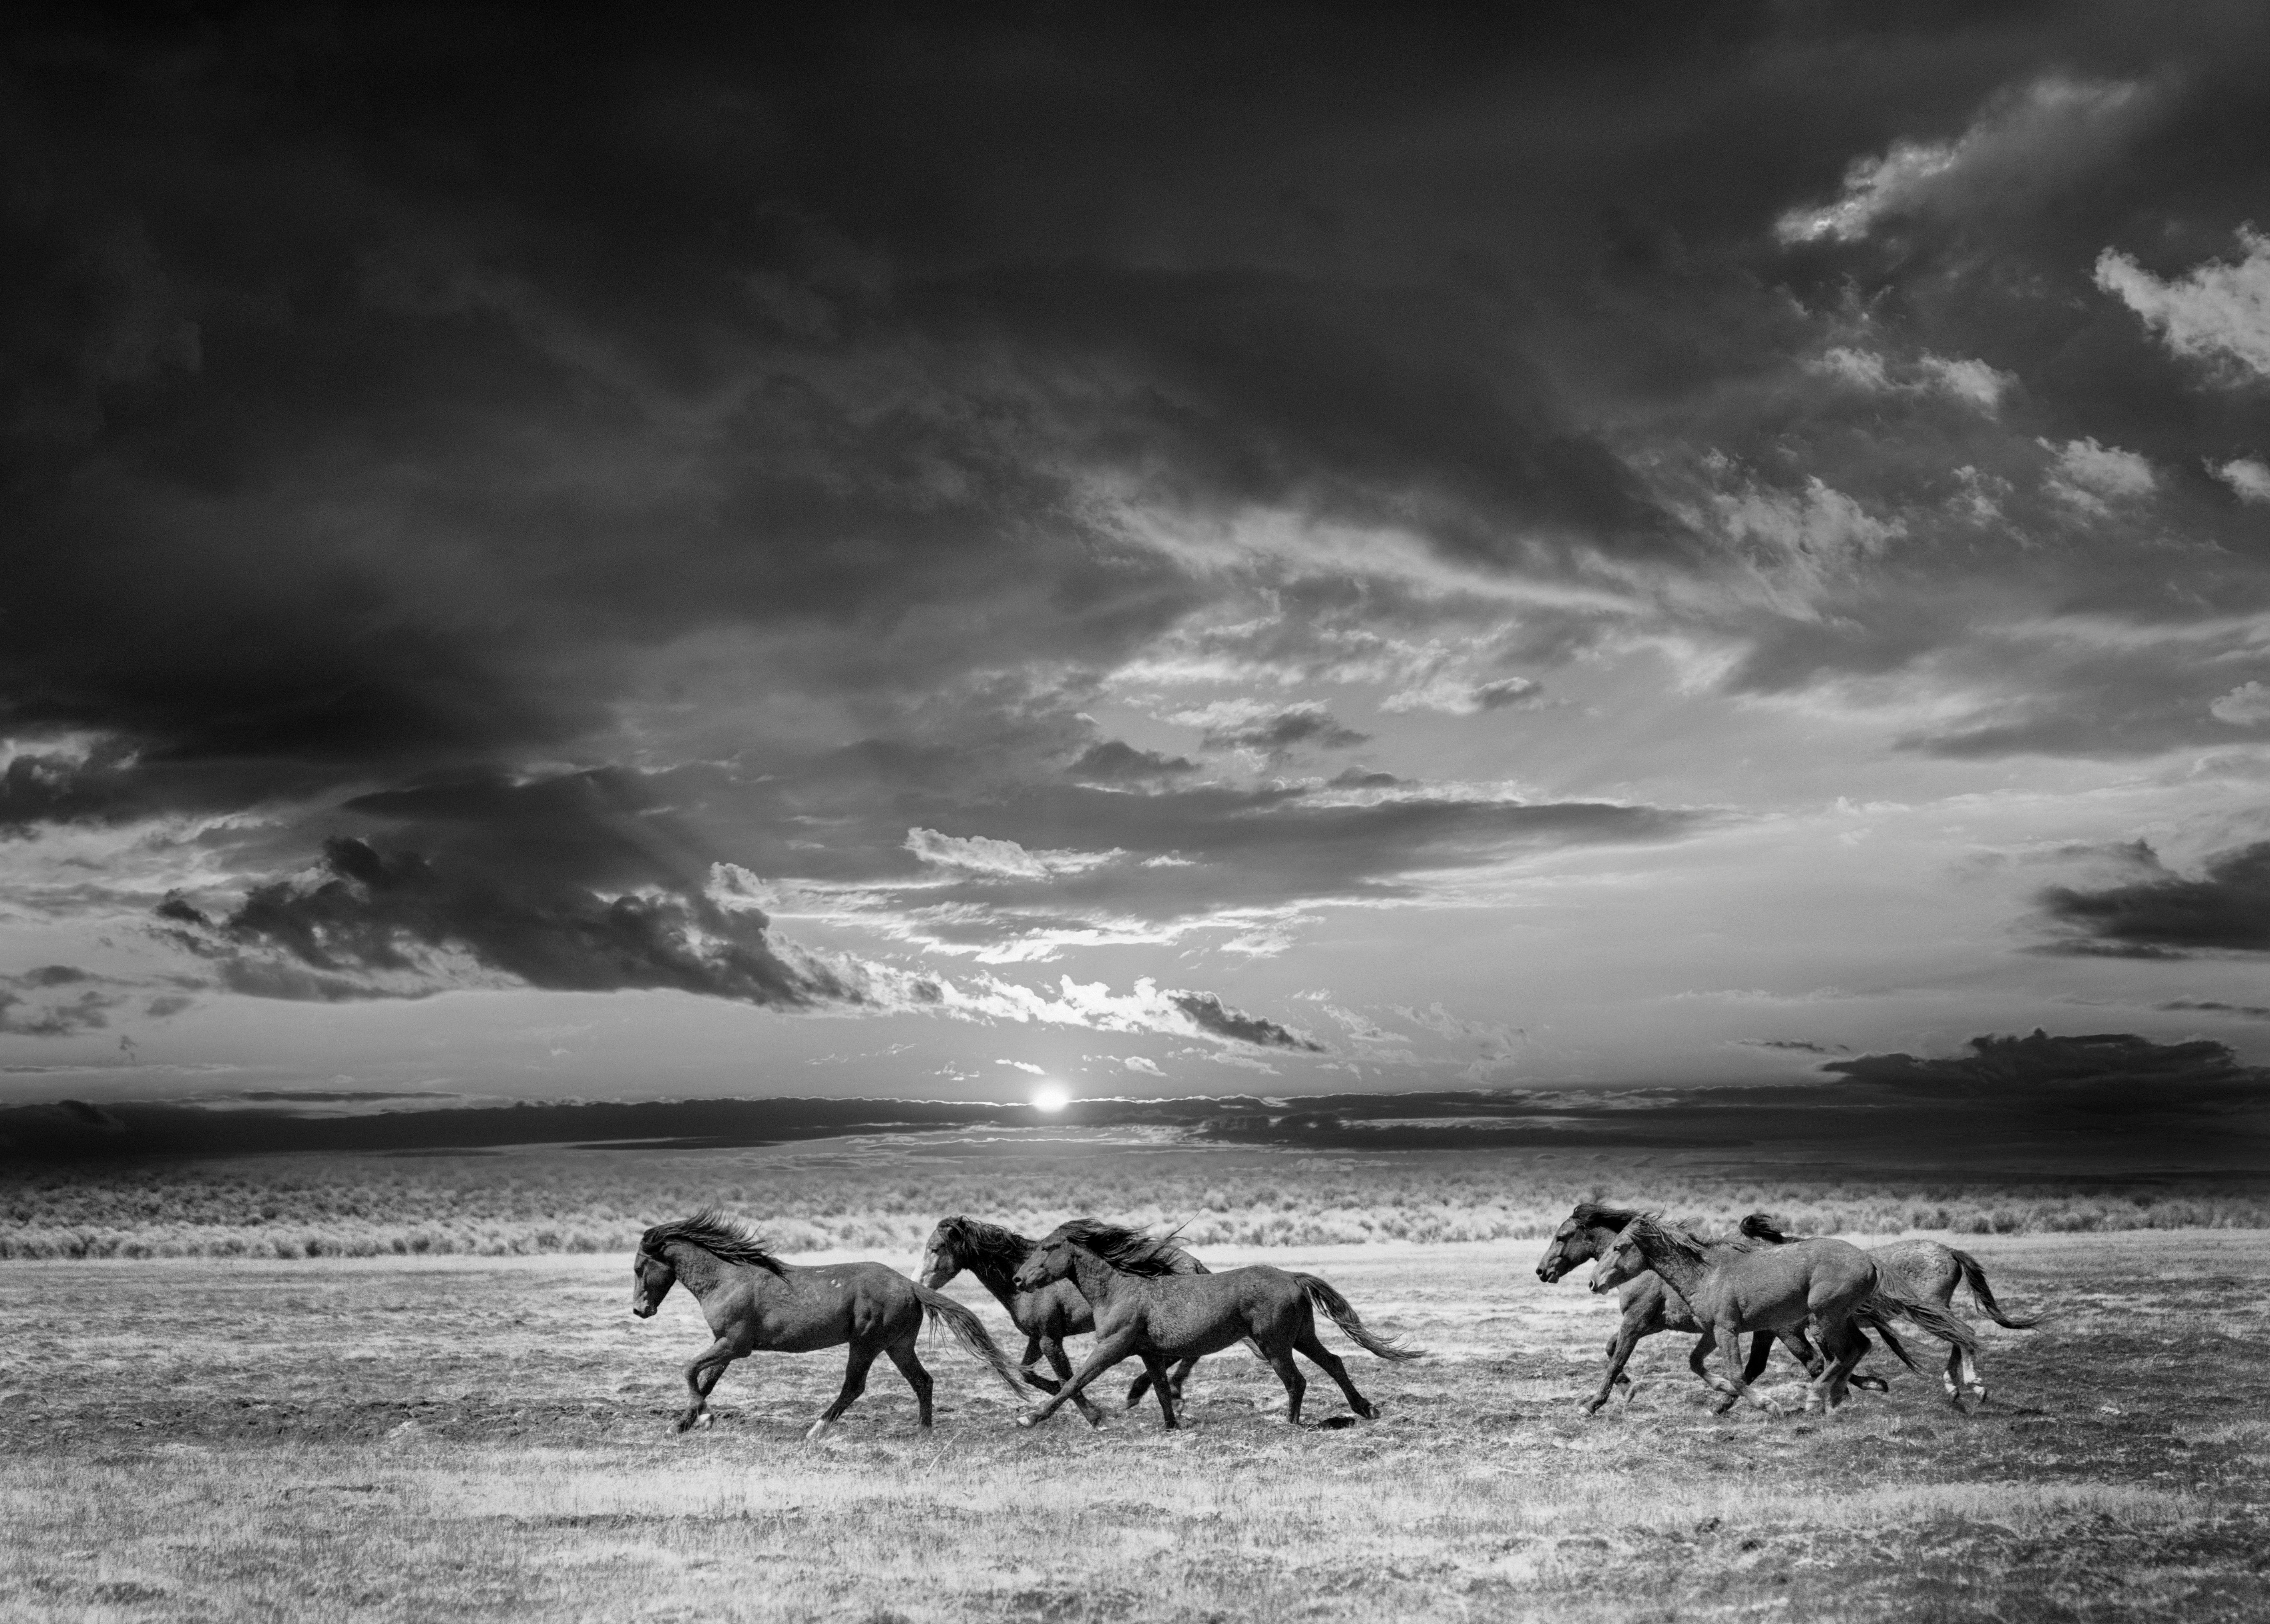 Shane Russeck Black and White Photograph – Chasing the Light – 28x40 Schwarz-Weiß-Fotografie mit Wildpferden, Senf, signiert